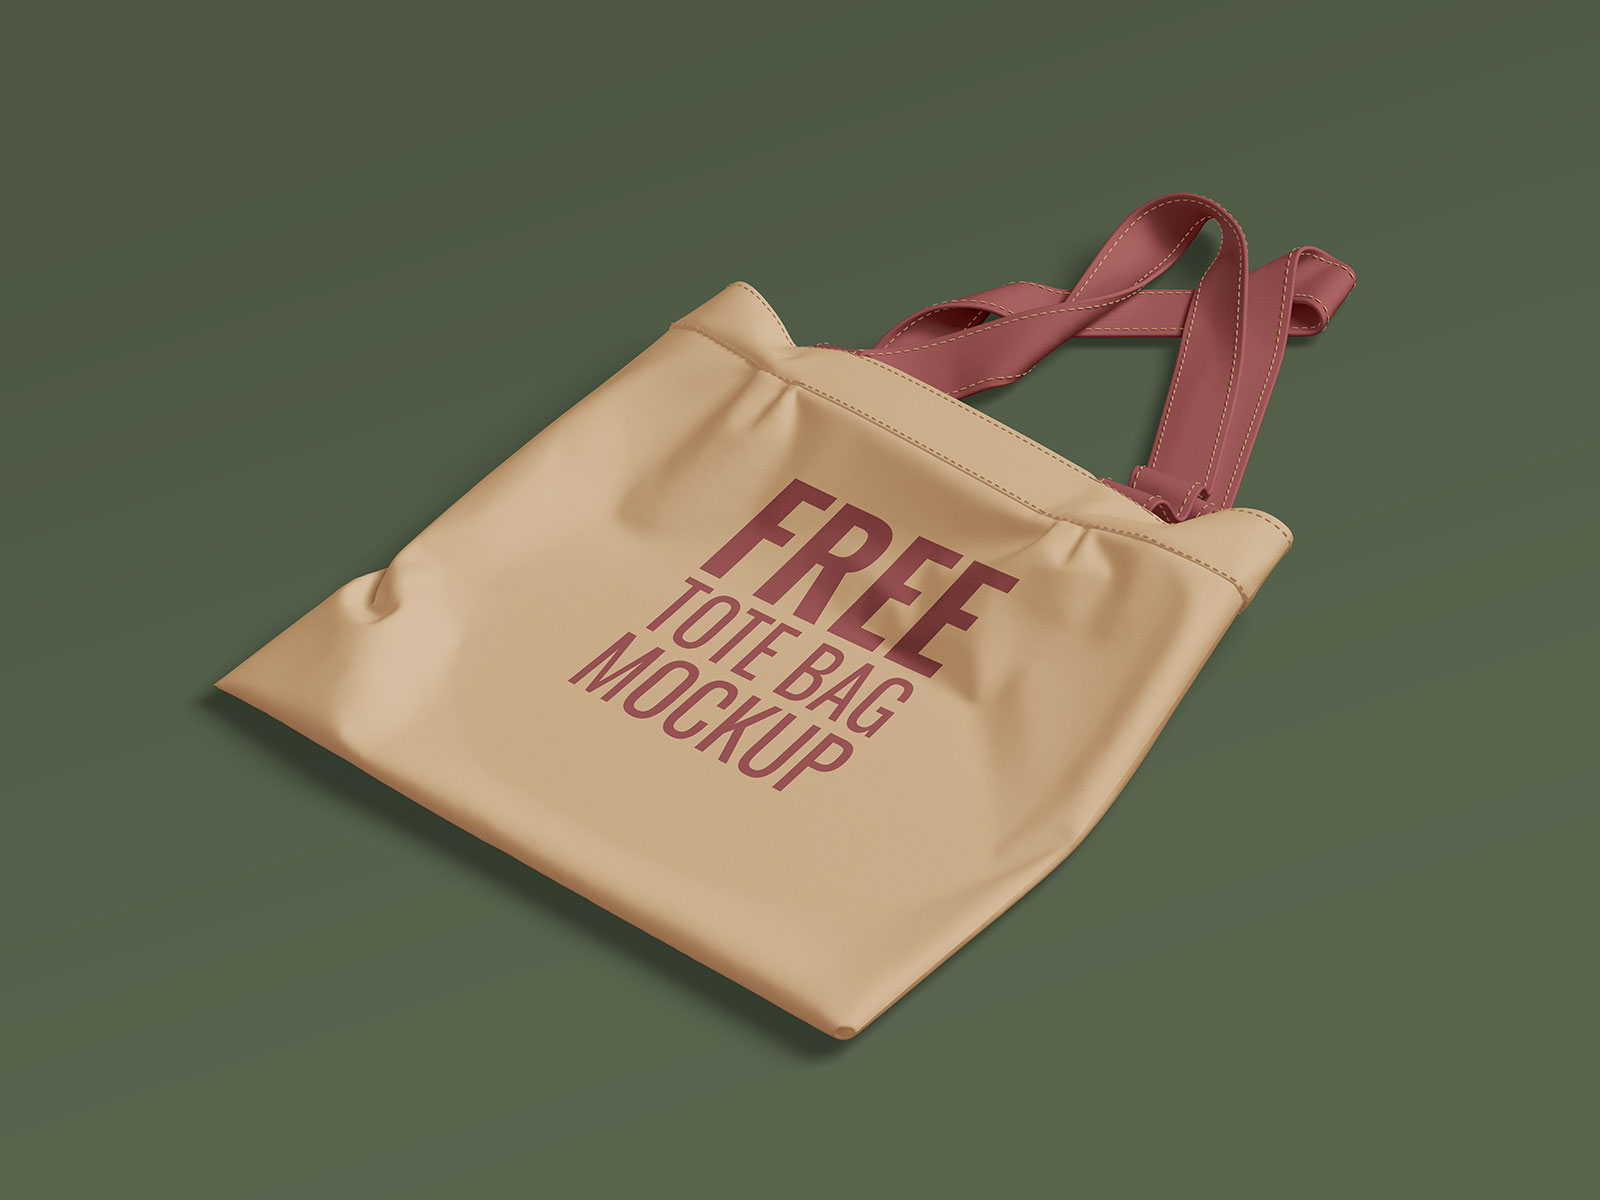 Free Canvas Tote Shopping Bag Mockup PSD Set